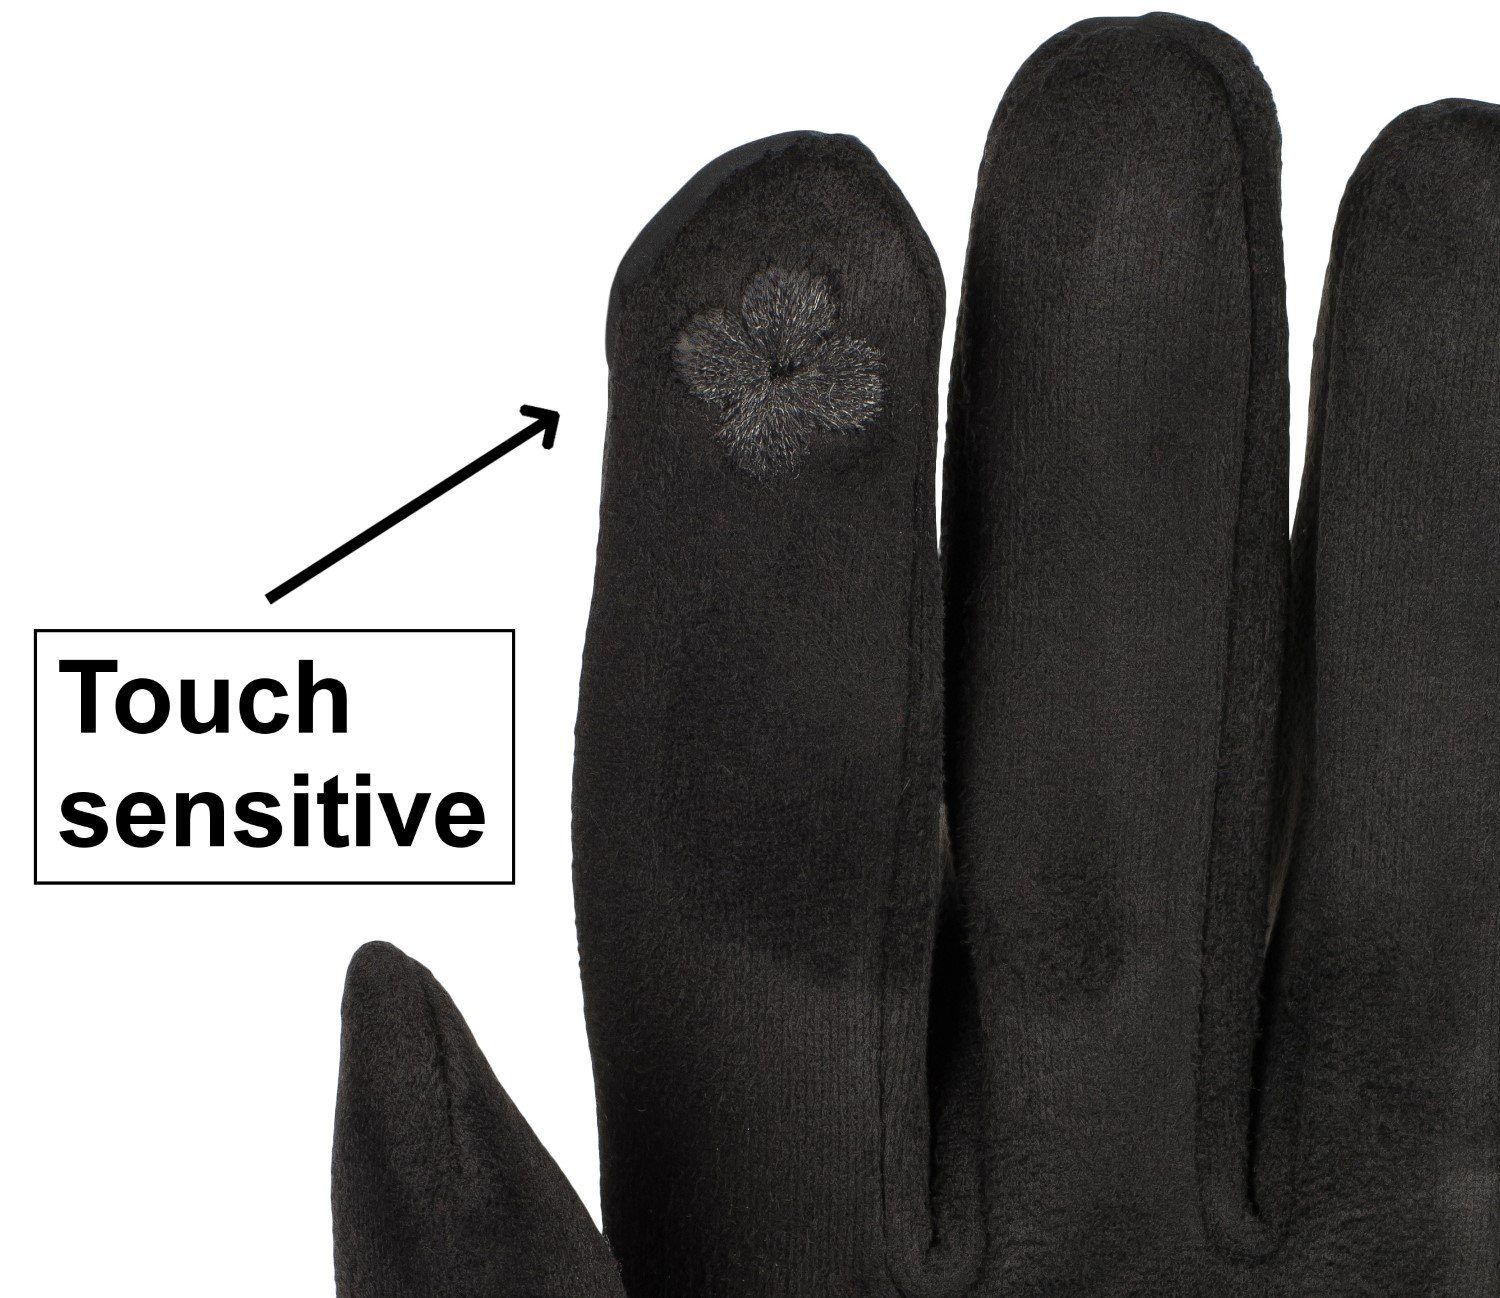 styleBREAKER Fleecehandschuhe Touchscreen Handschuhe bestickt Schwarz Zick-Zack